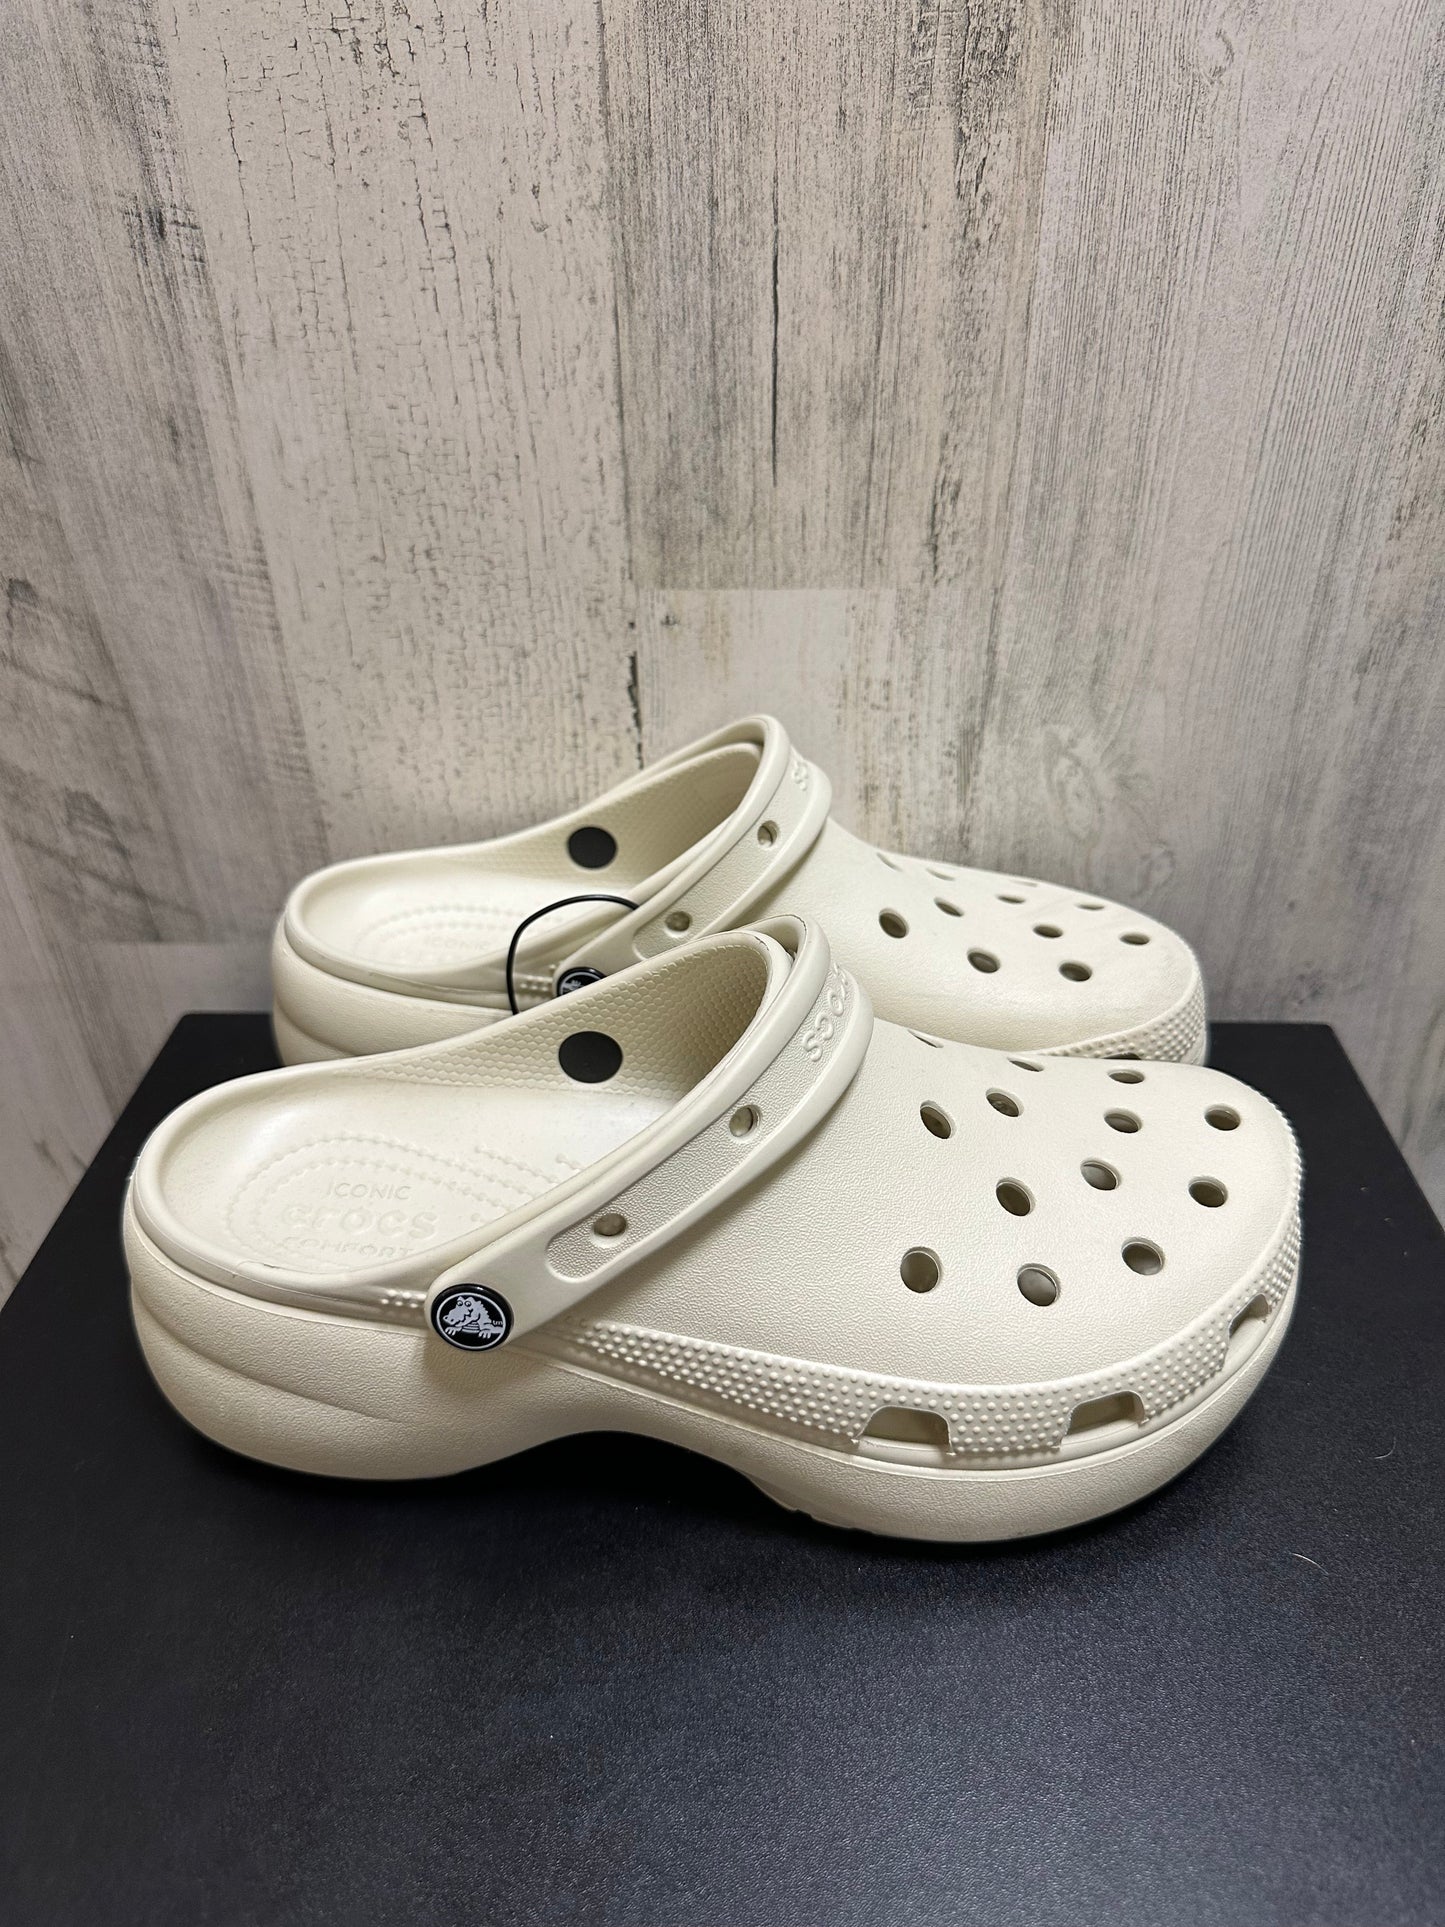 Tan Shoes Flats Crocs, Size 9